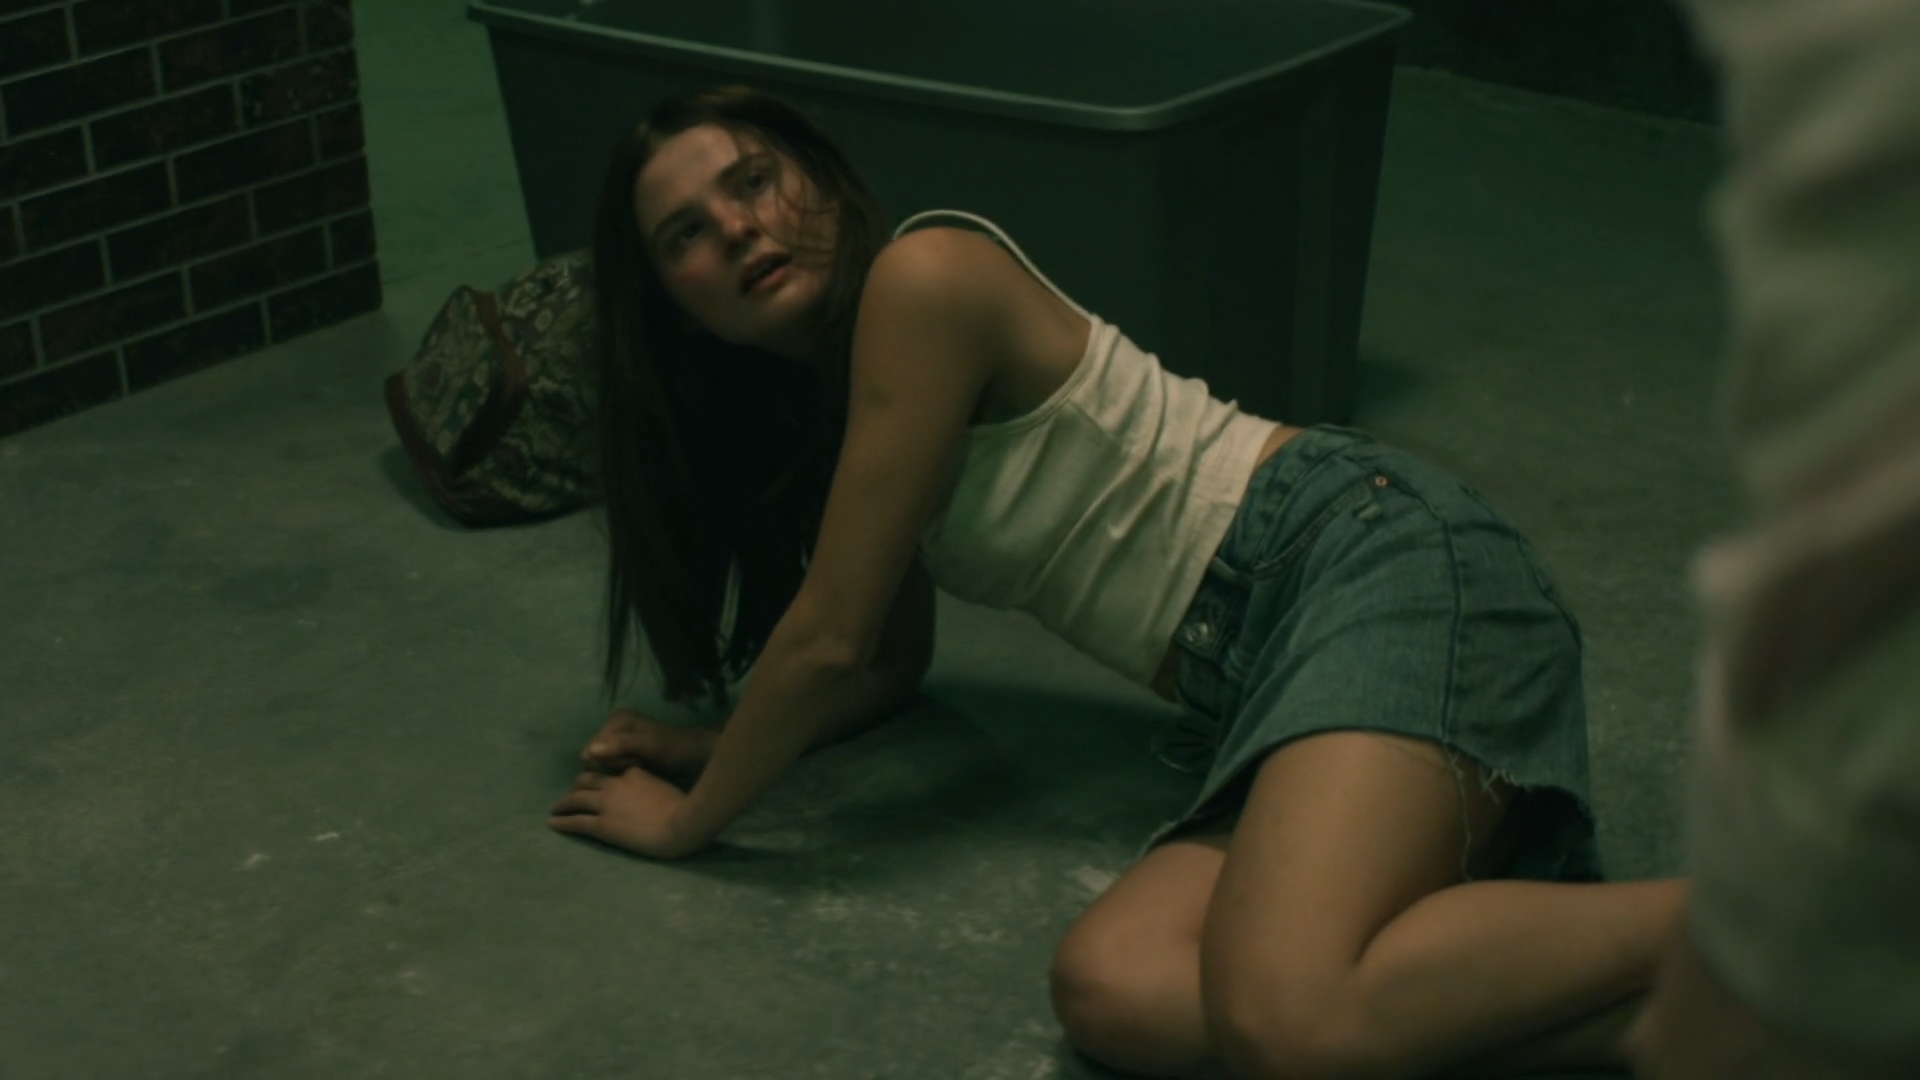 Girl in the basement sex scene movie